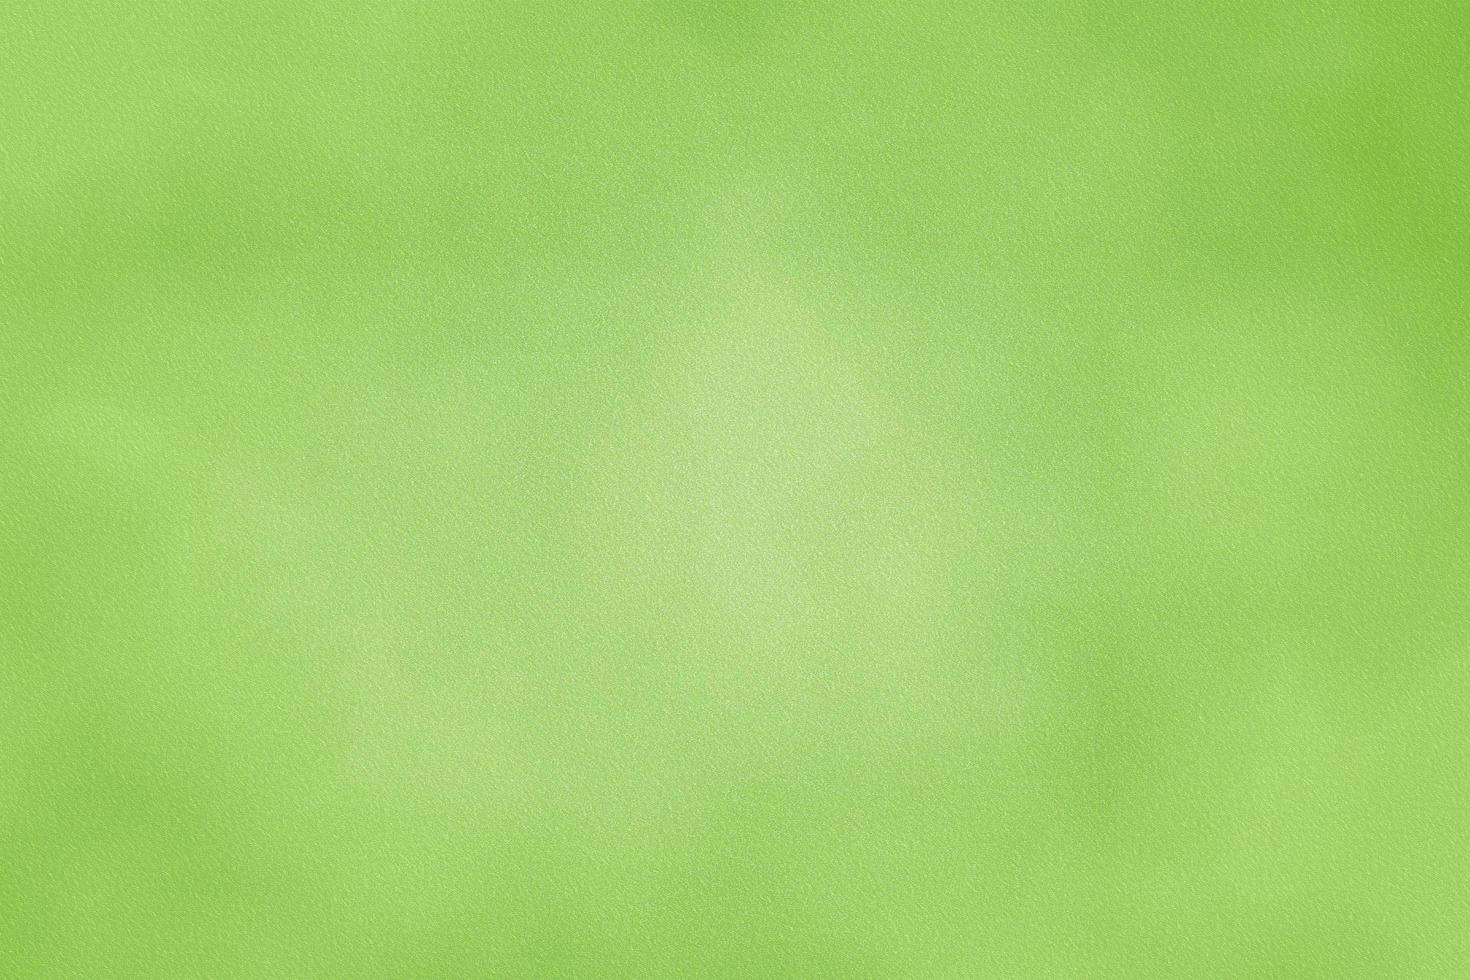 textura de suciedad en lienzo verde claro, fondo abstracto foto